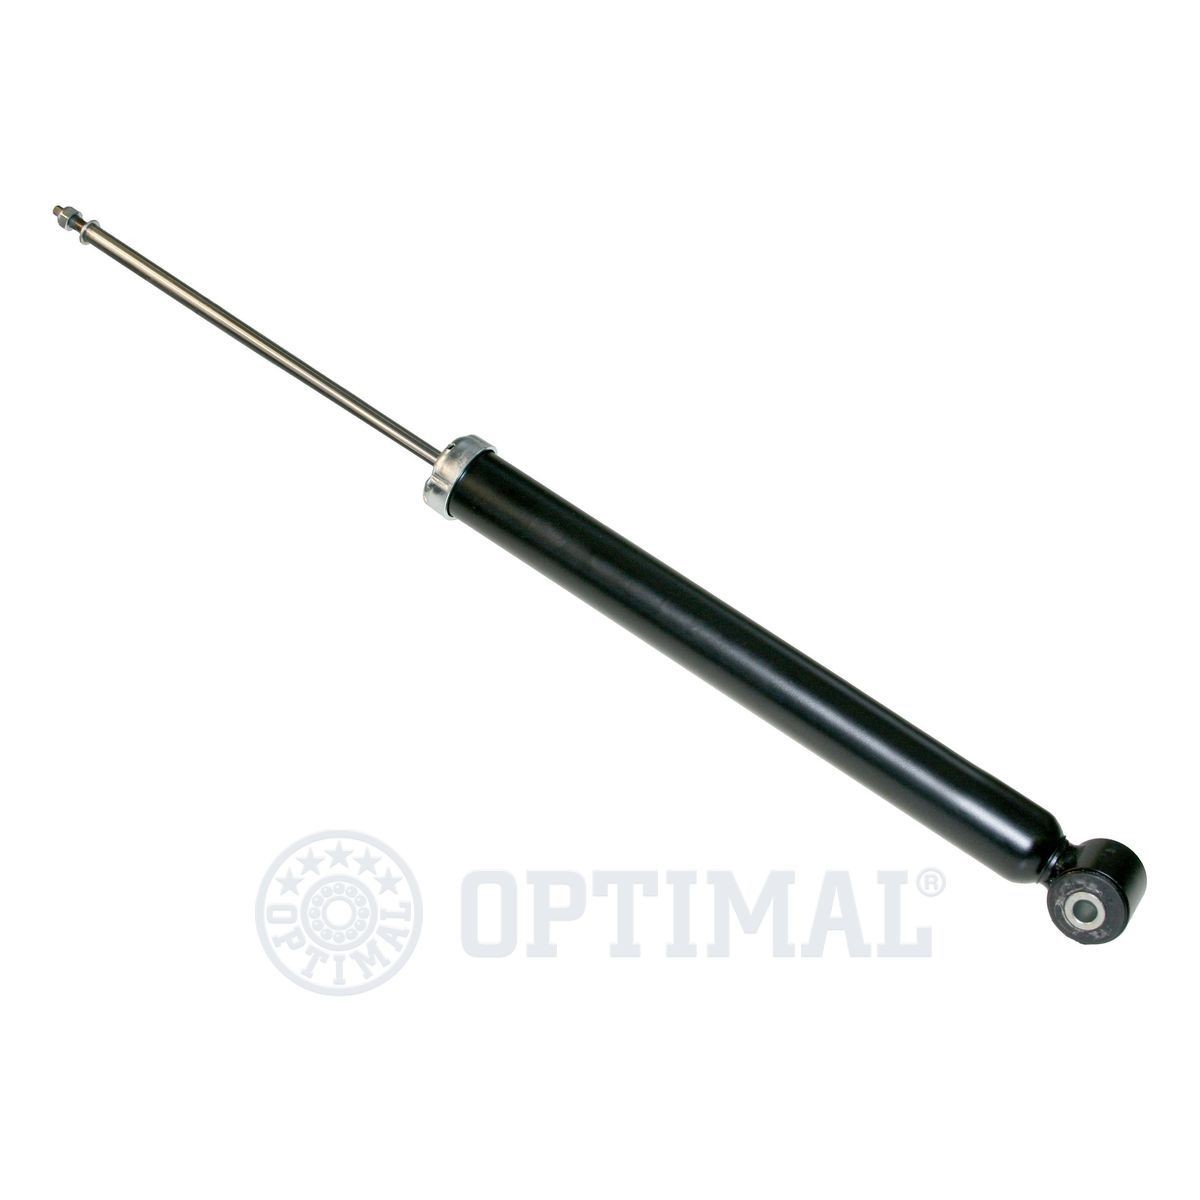 OPTIMAL Rear Axle, Gas Pressure, Monotube, Spring-bearing Damper, Bottom eye, Top pin, M8x1.25 Shocks A-1476G buy